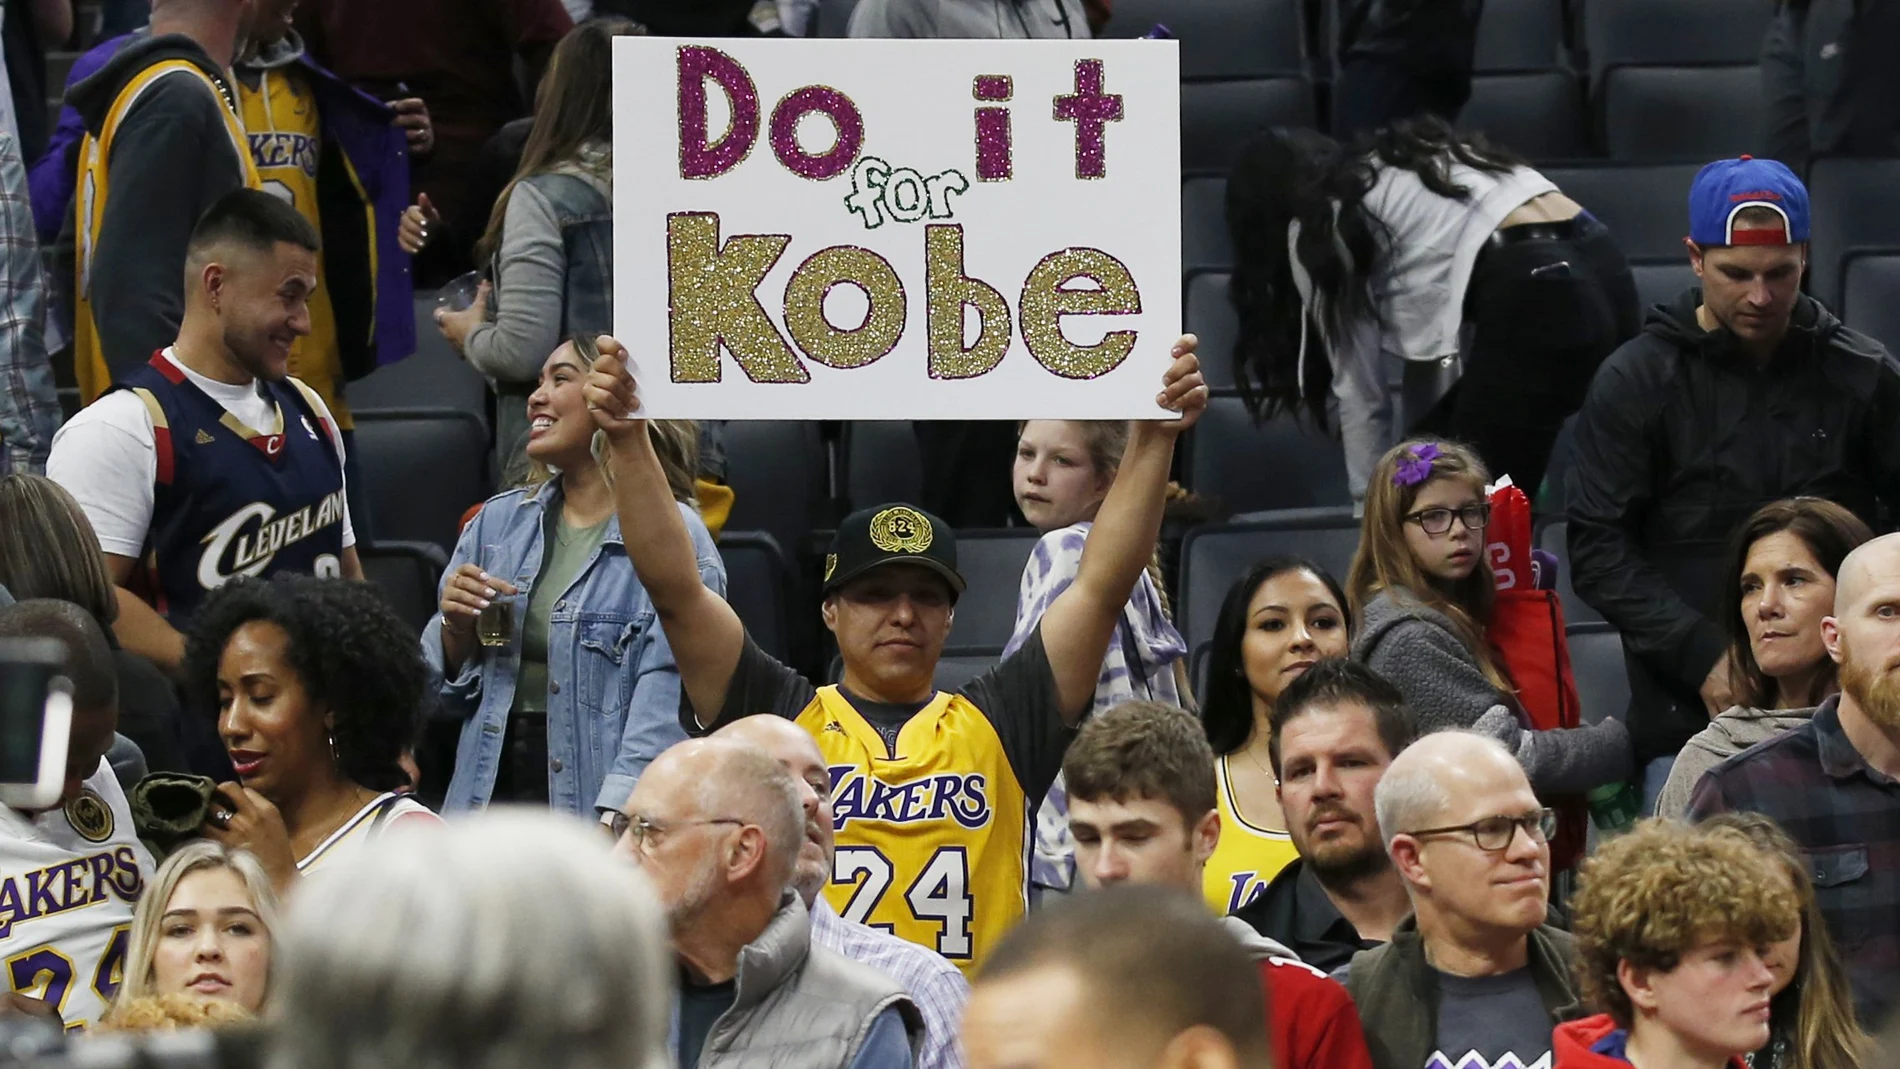 Un cartel por Kobe Bryant en un partido de la NBA